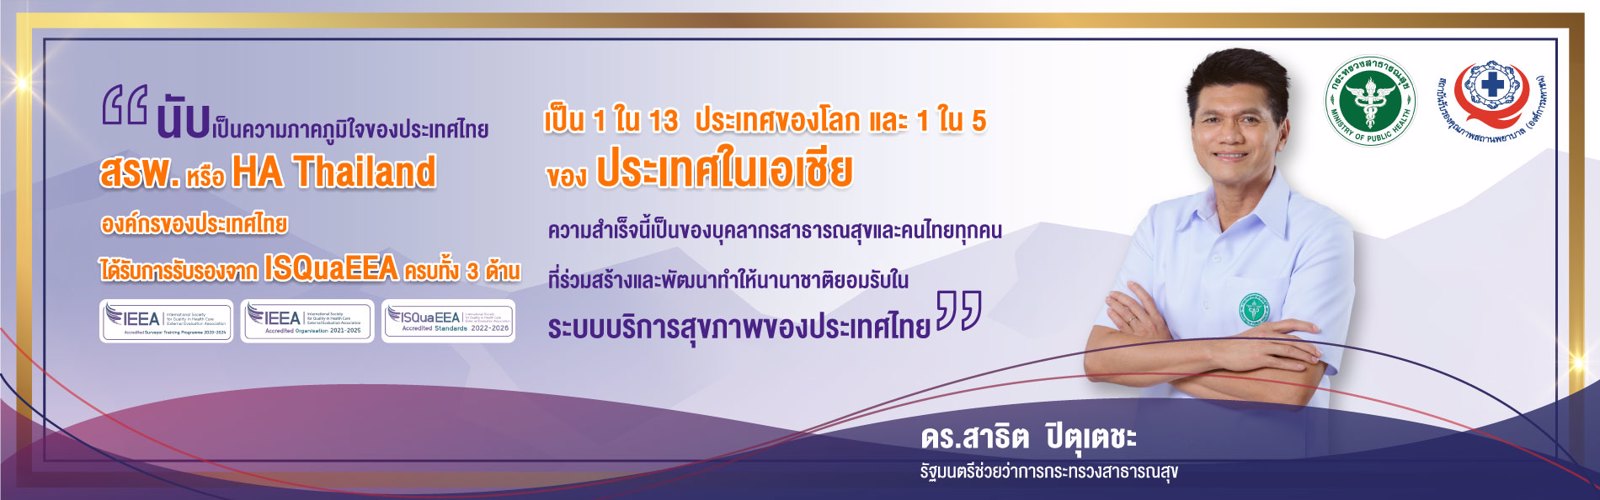 ความภาคภูมิใจของประเทศไทย ที่ สรพ. หรือ HA T้hailand องค์กรของประเทศไทยได้รับการรับรองจาก ISQuaEEA 